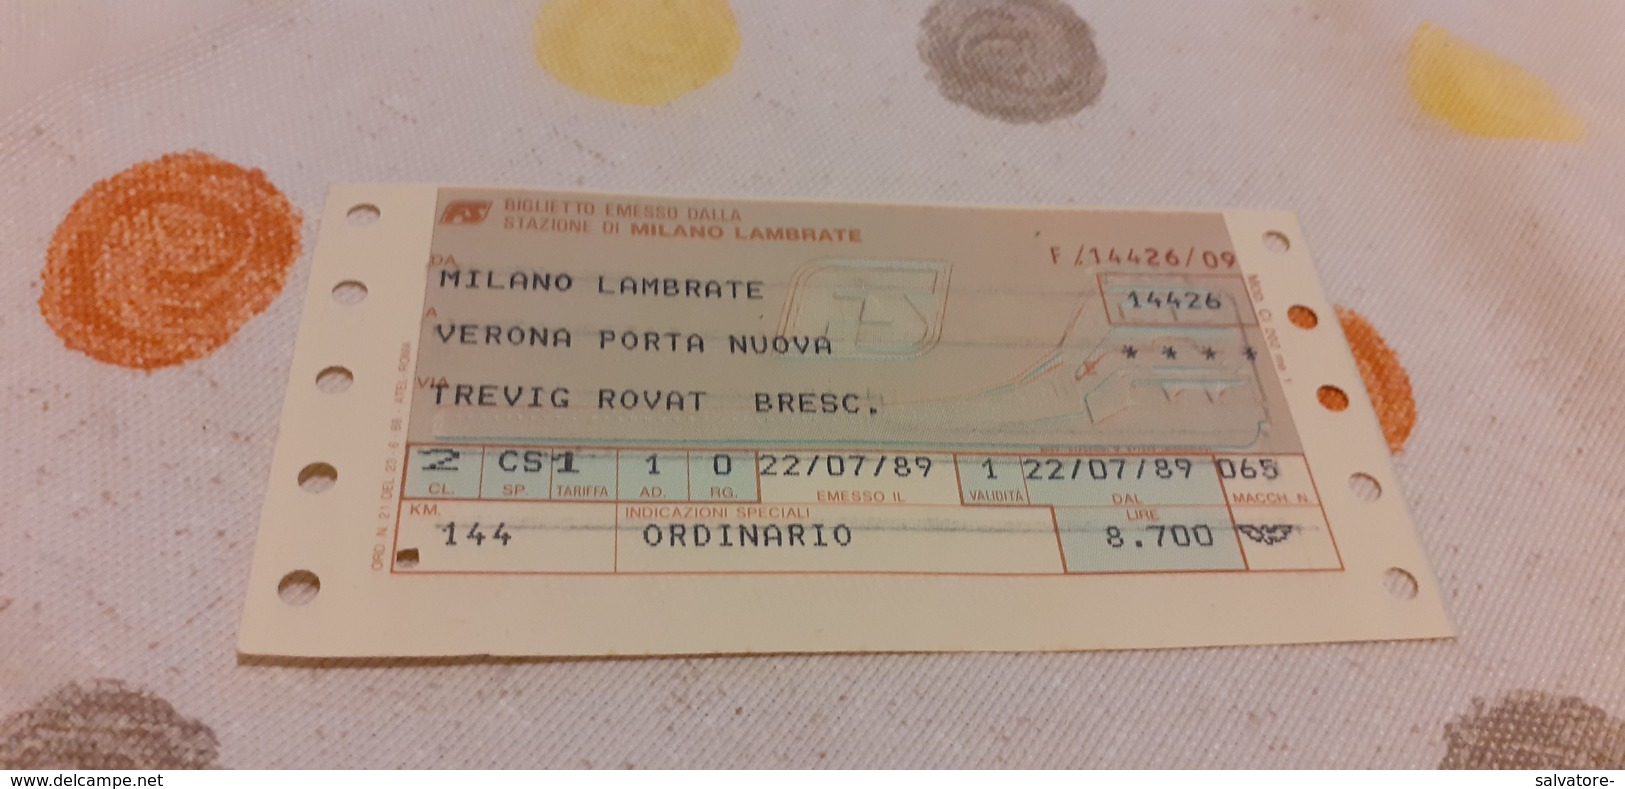 BIGLIETTO TRENO DA MILANO LAMBRATE A VERONA PORTA NUOVA 1989 - Europe